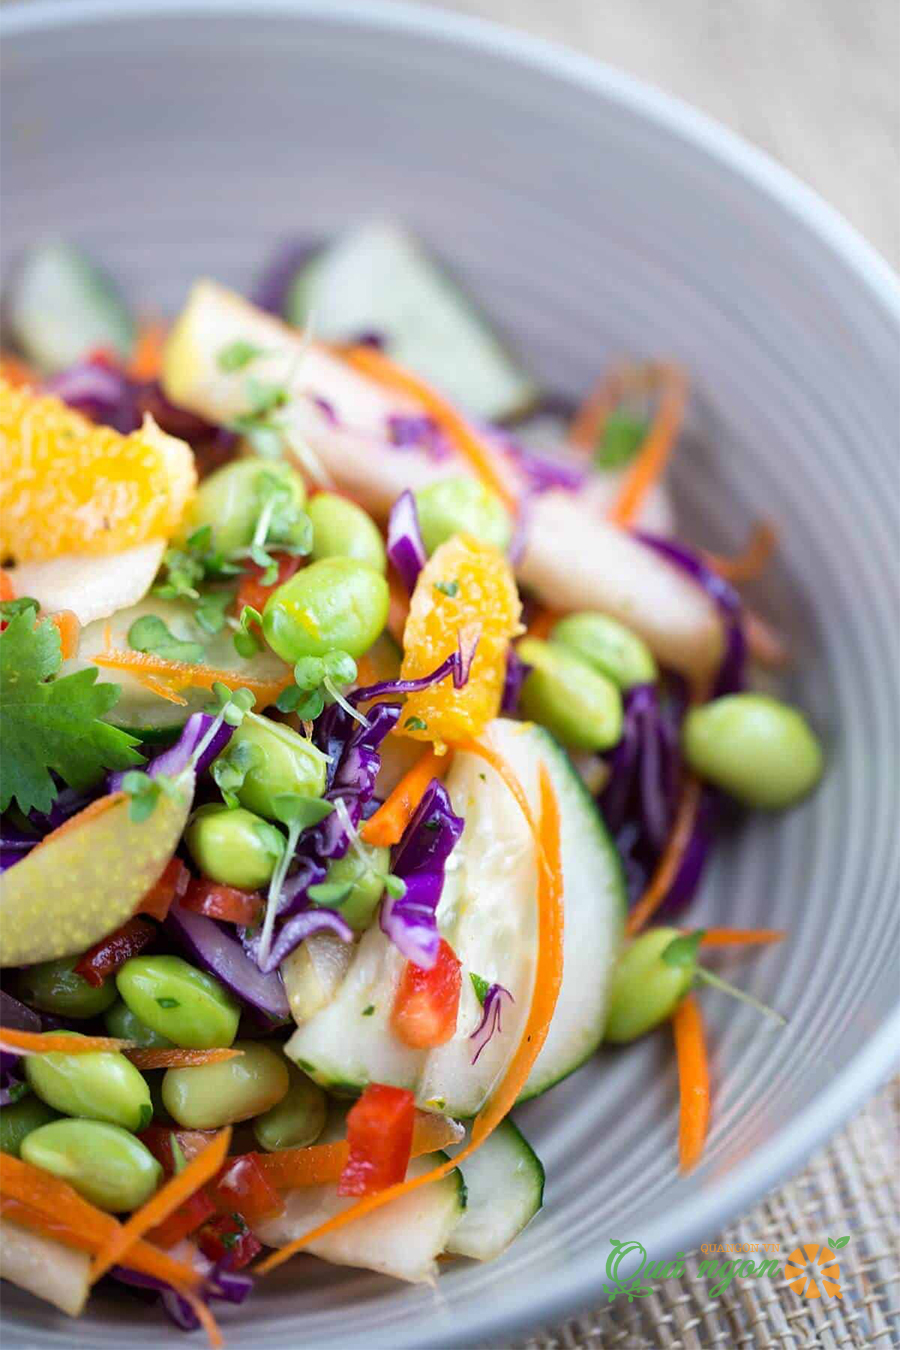 Cách làm salad lê với nước sốt cam gừng đầy màu sắc